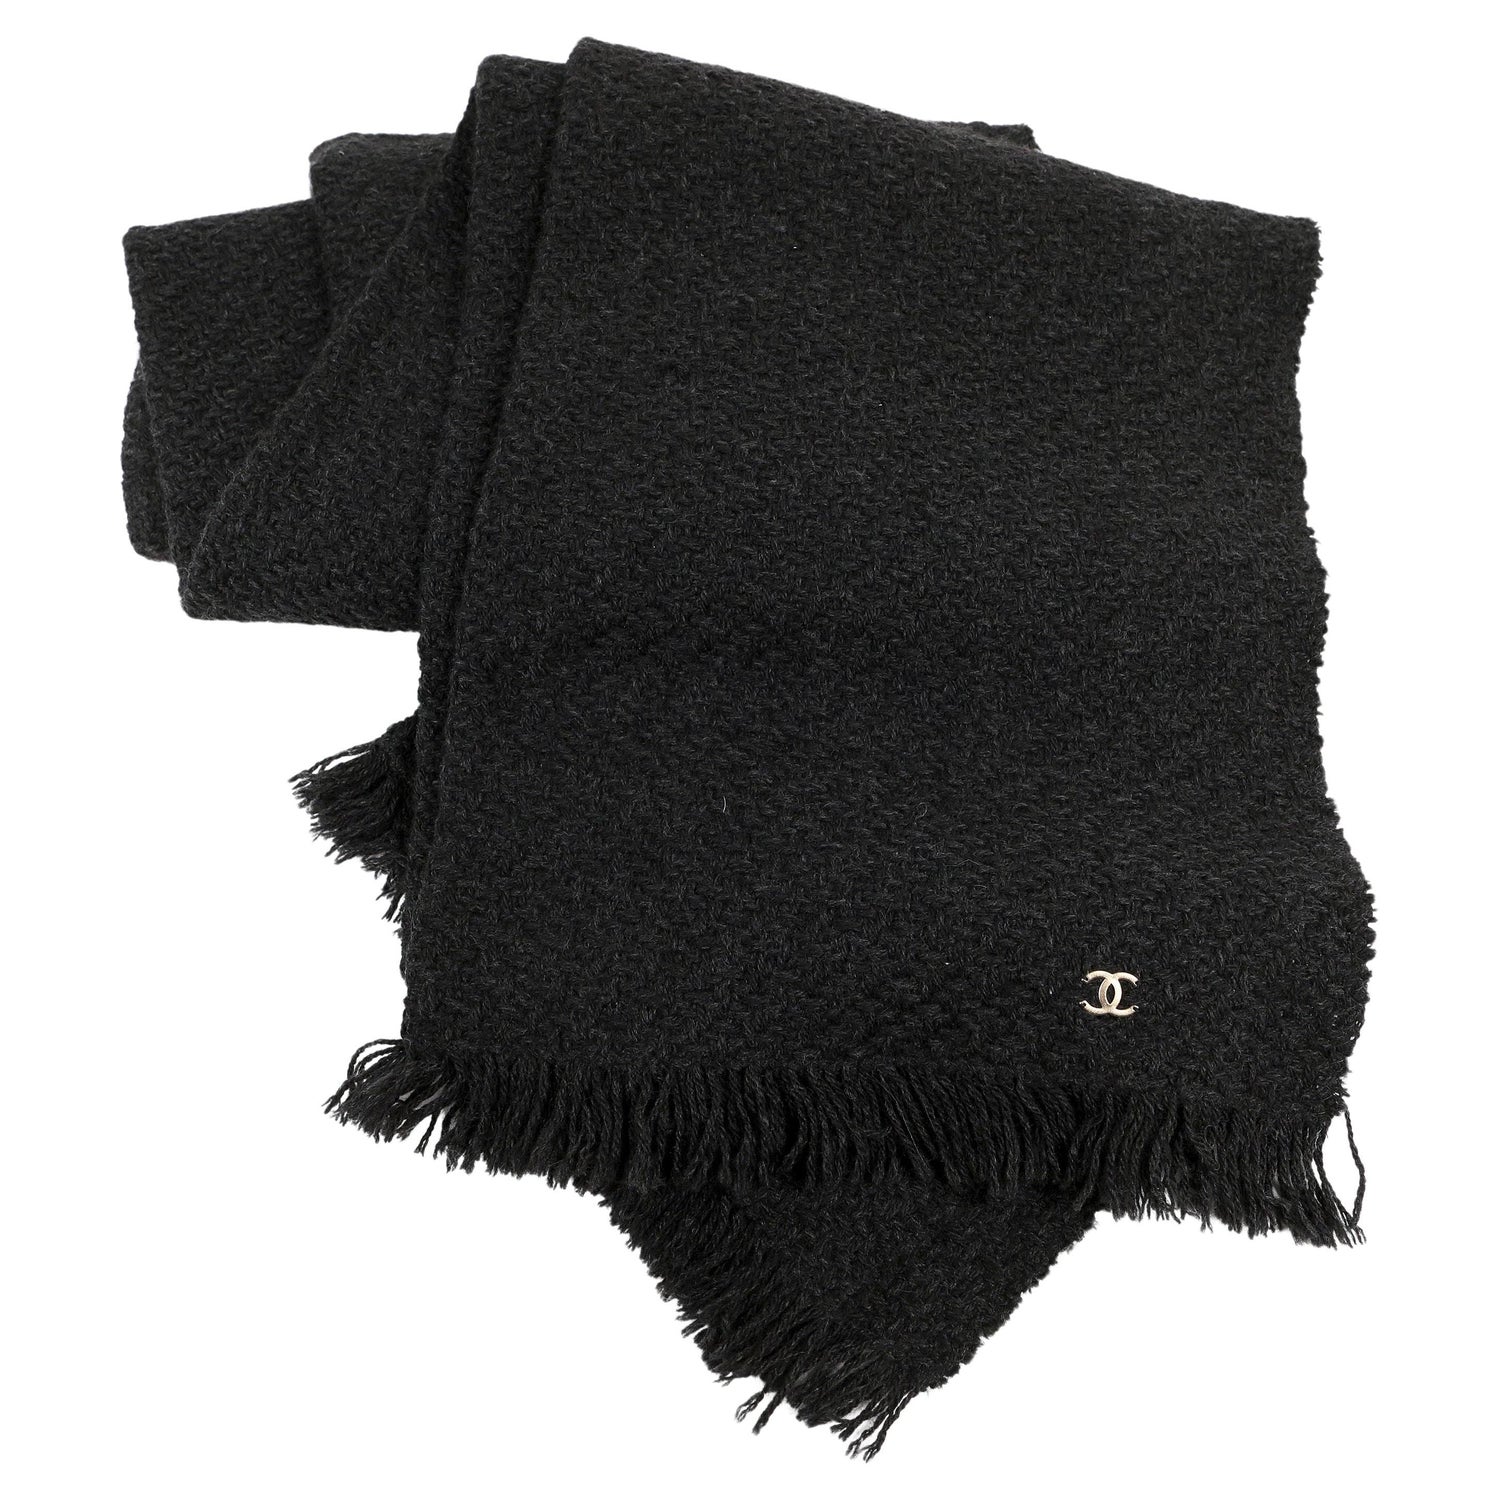 Hermès Black Op'H Silk Pochette Scarf – Only Authentics